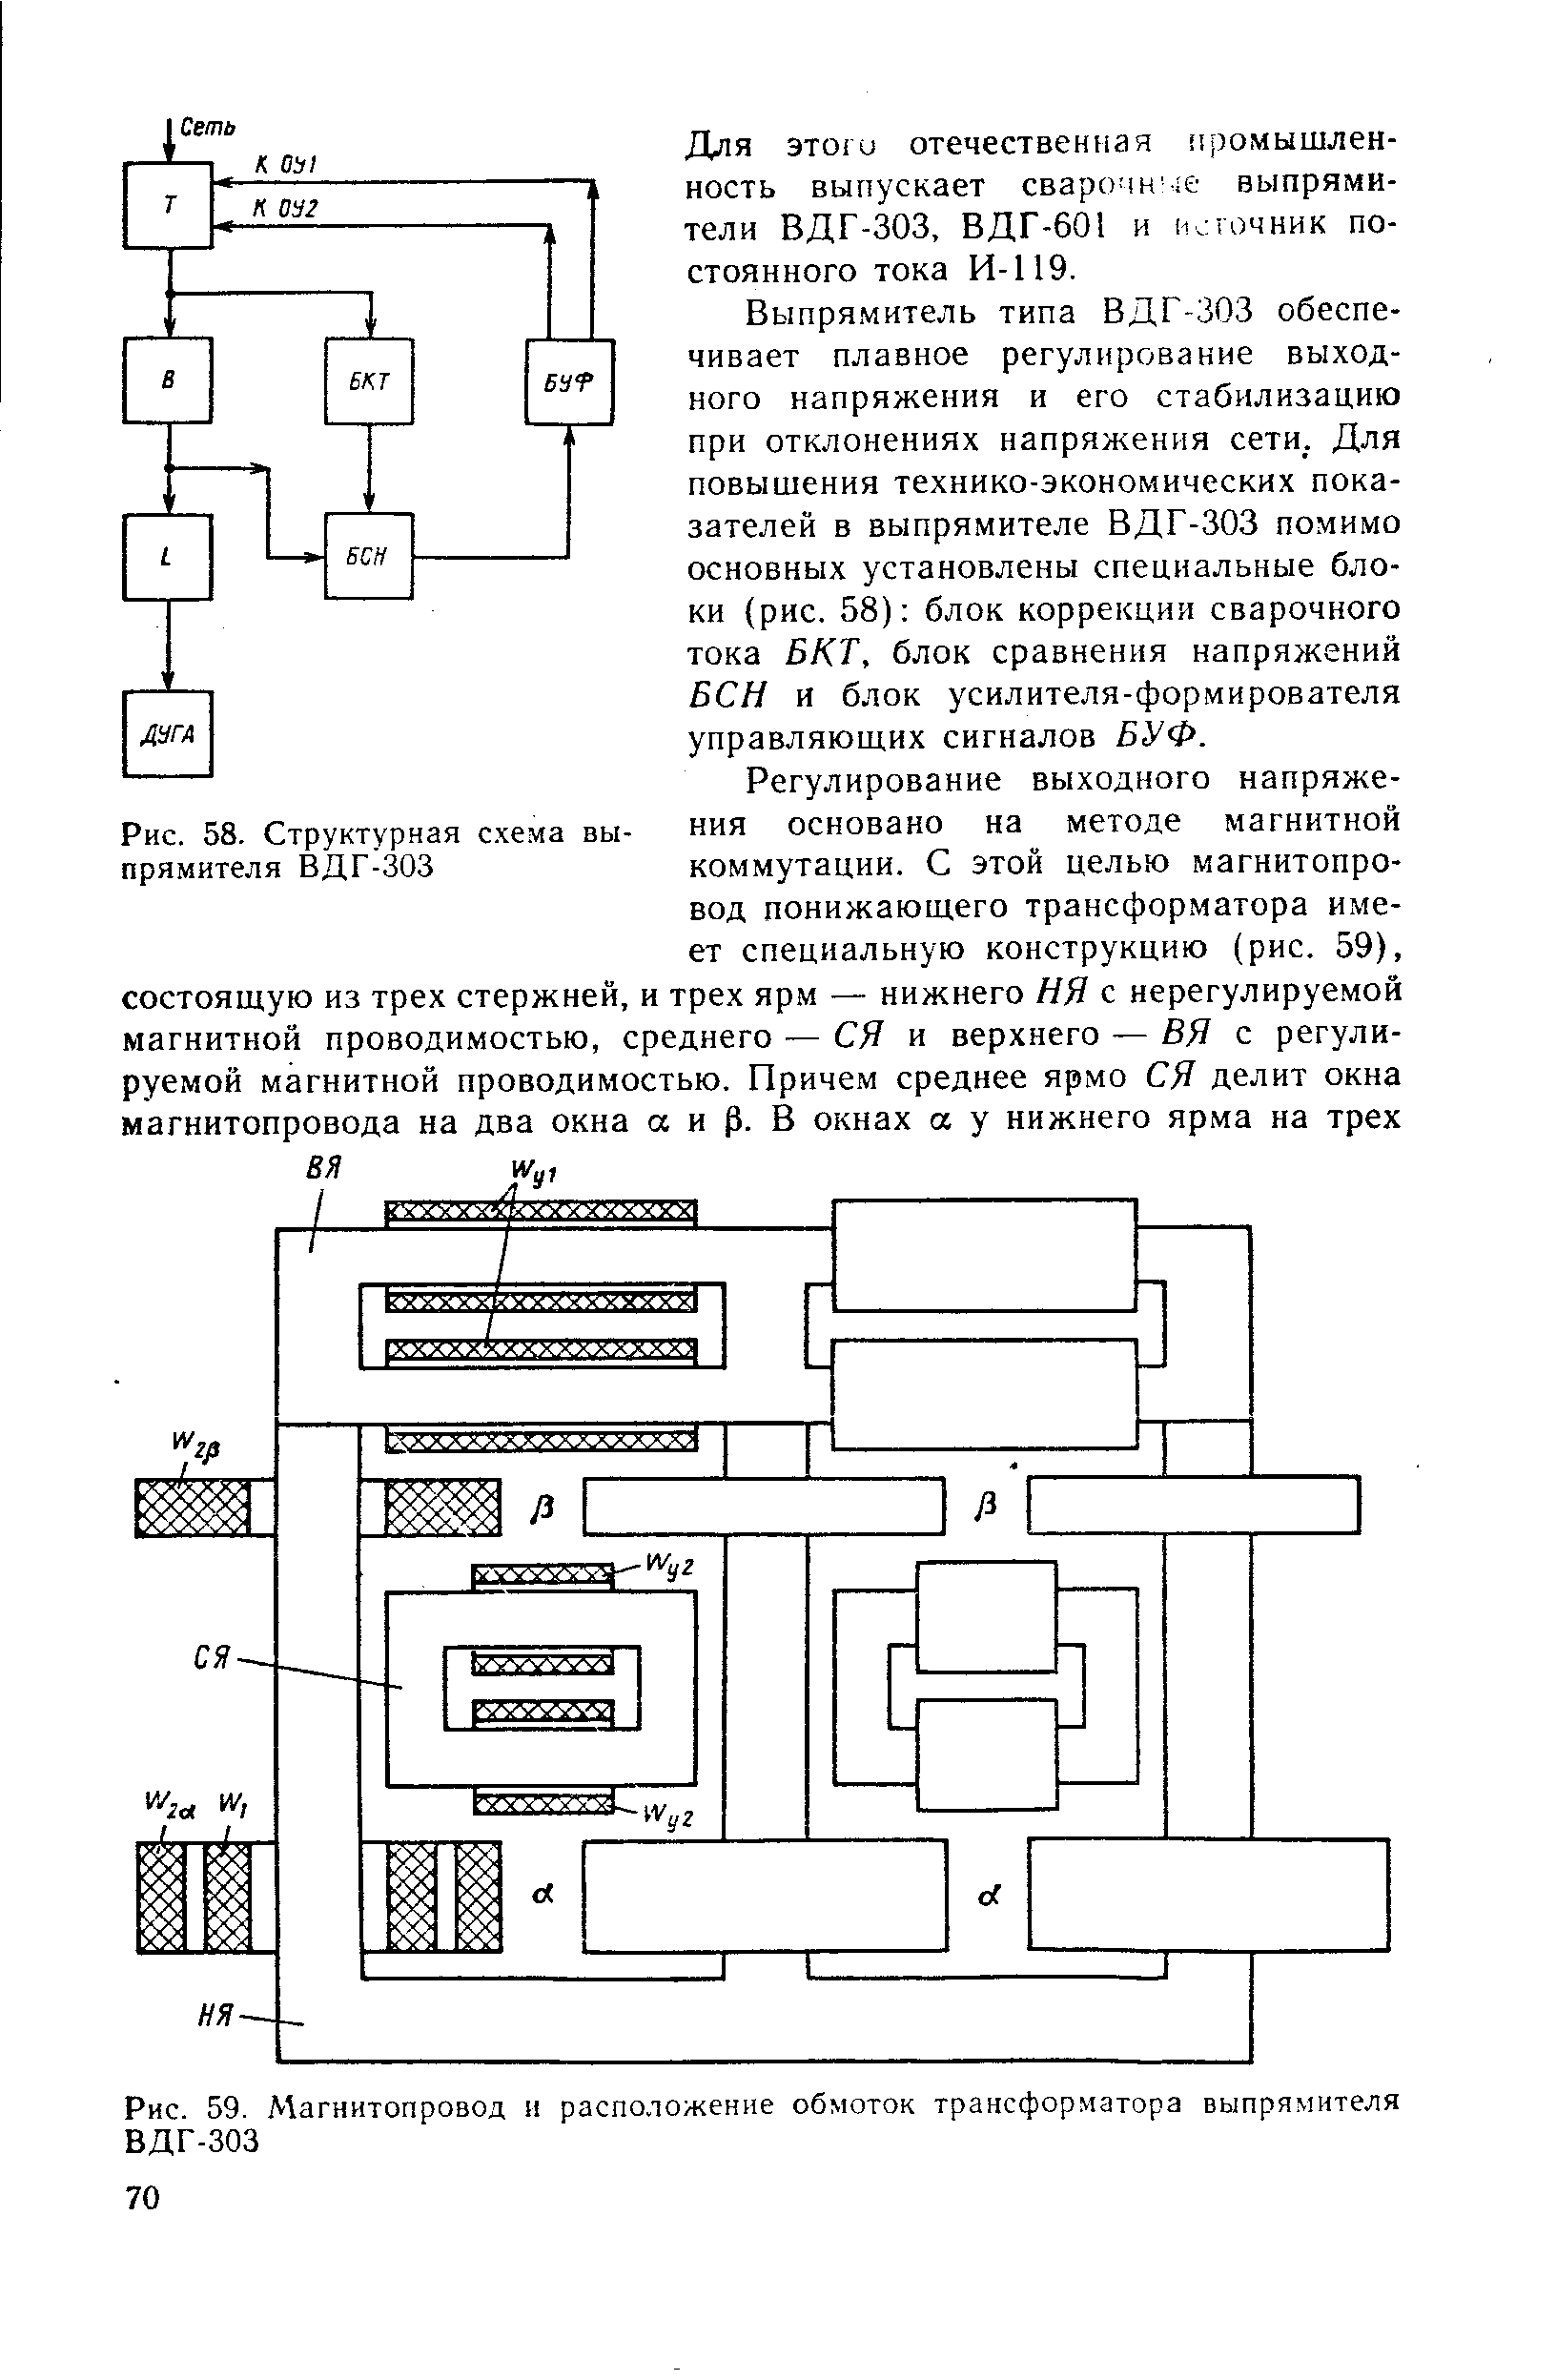 Рис. 59. Магнитопровод и расположение обмоток трансформатора выпрямителя ВДГ-303
